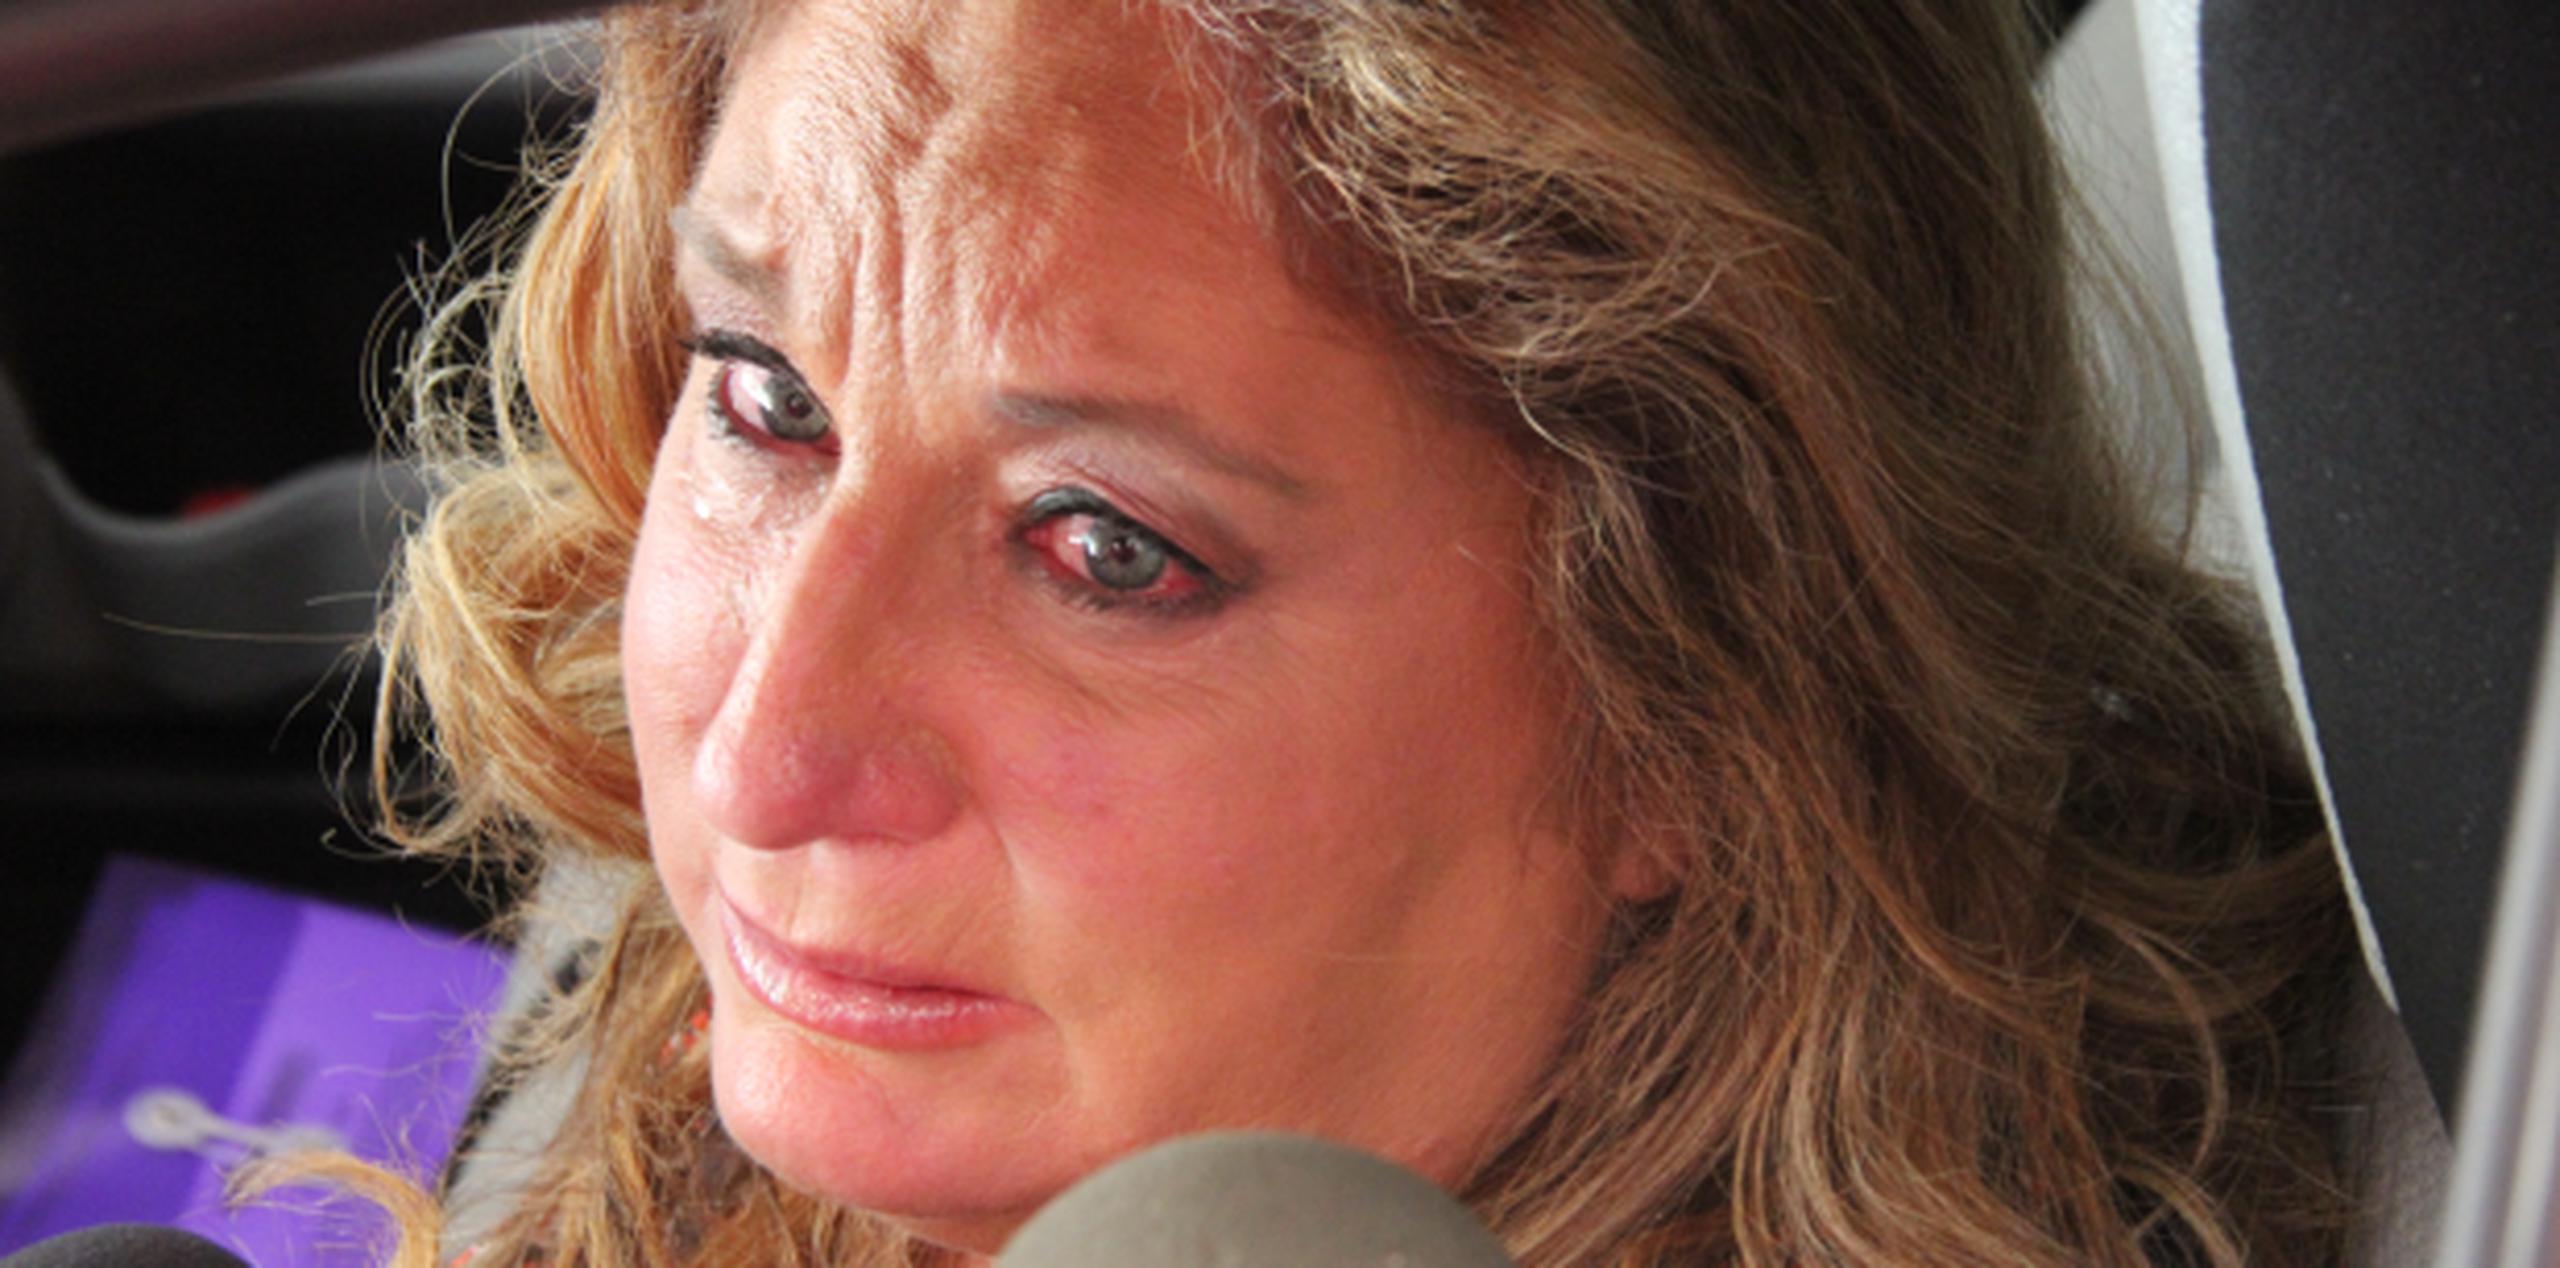 Susan Soltero forma parte de la plantilla de "Dando candela" tras el cierre de “Las noticias” de Univisión Puerto Rico. (Archivo)